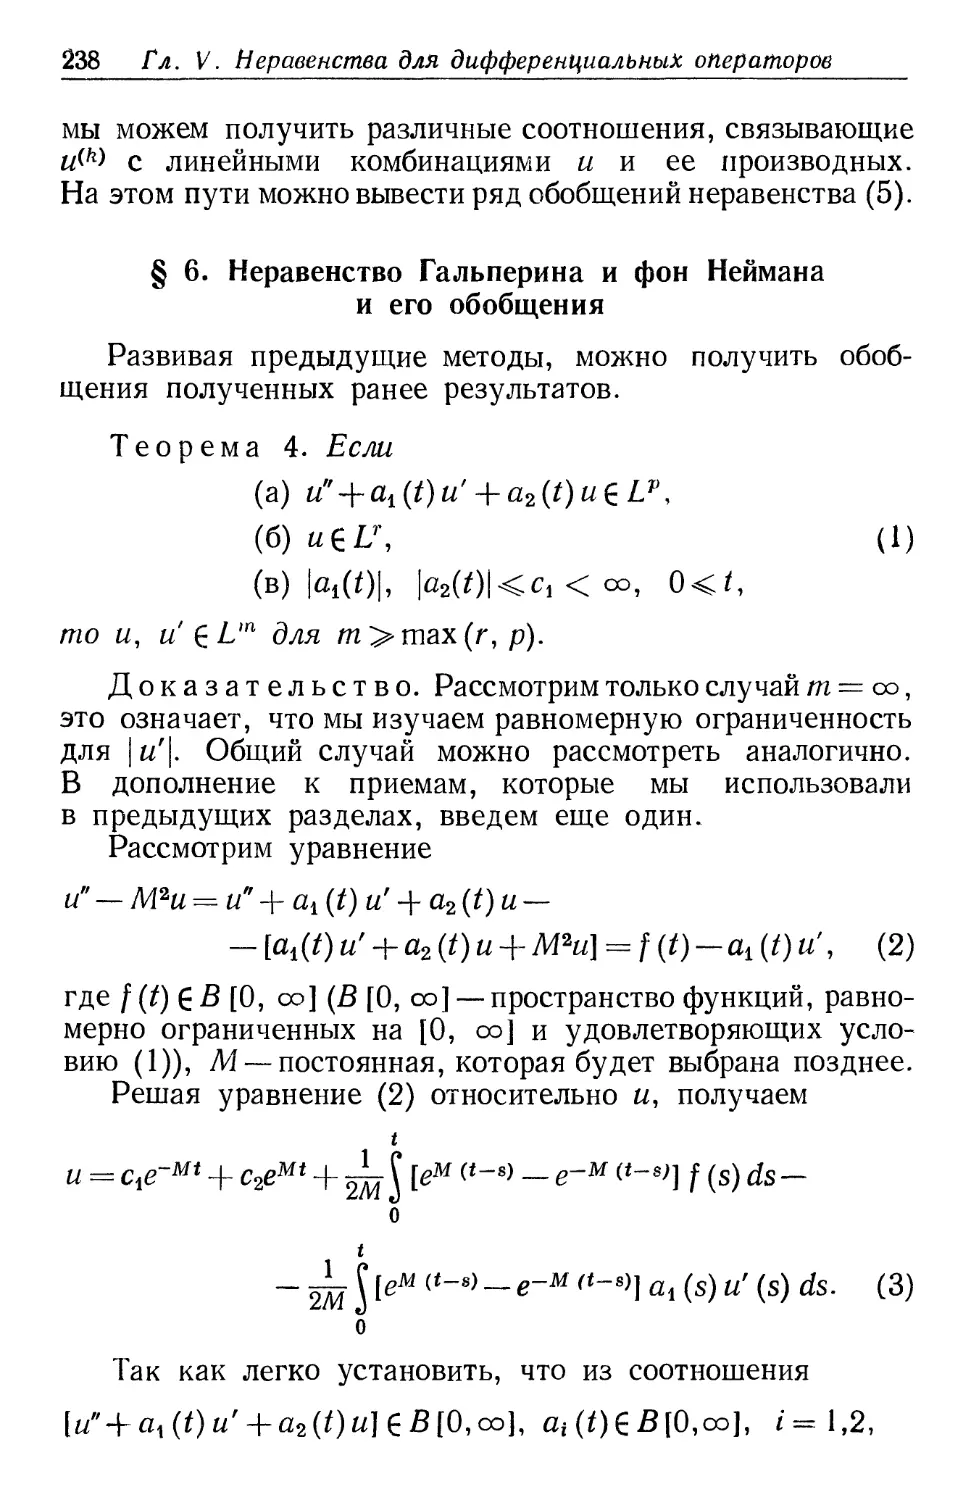 § 6. Неравенство Гальперина и фон Неймана и его обобщения